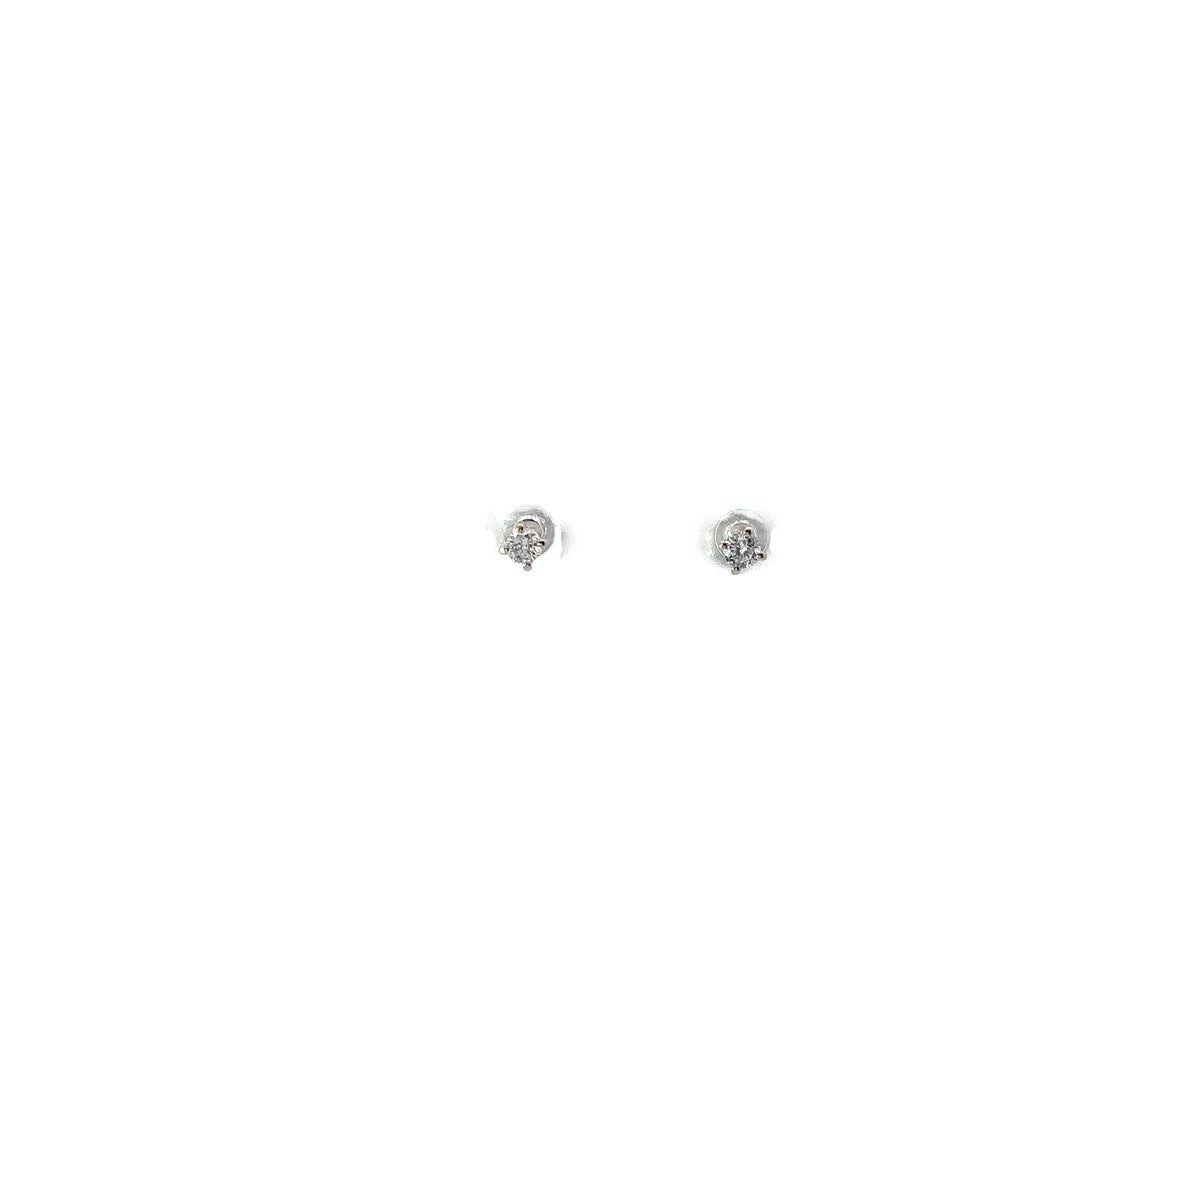 Baby 14k white gold Diamond stud earrings